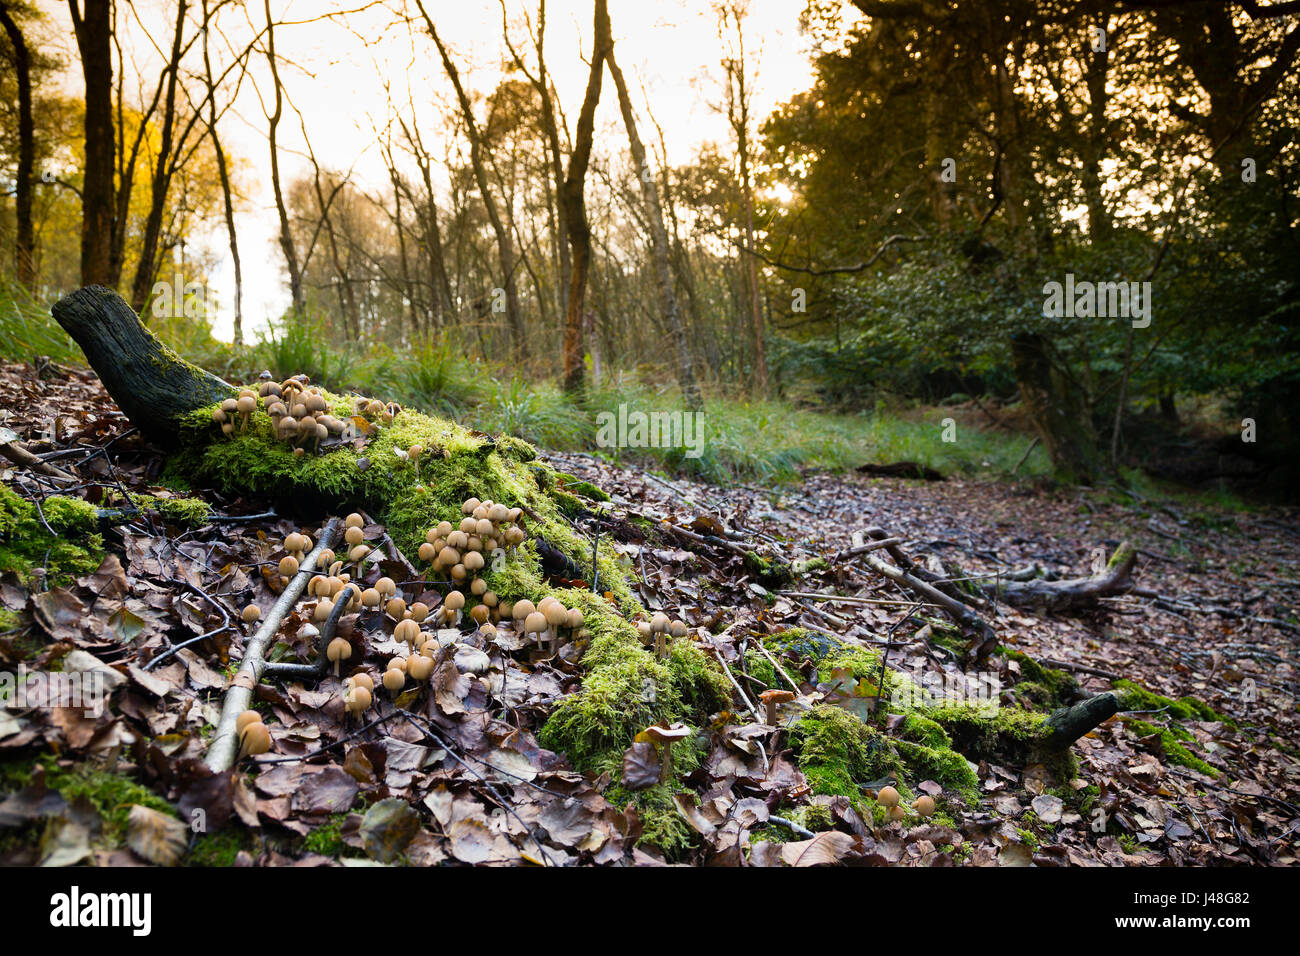 La forêt d'Ashdown, UK. Les champignons poussant sur le sol de la forêt d'Ashdown en fin d'après-midi la lumière. Banque D'Images